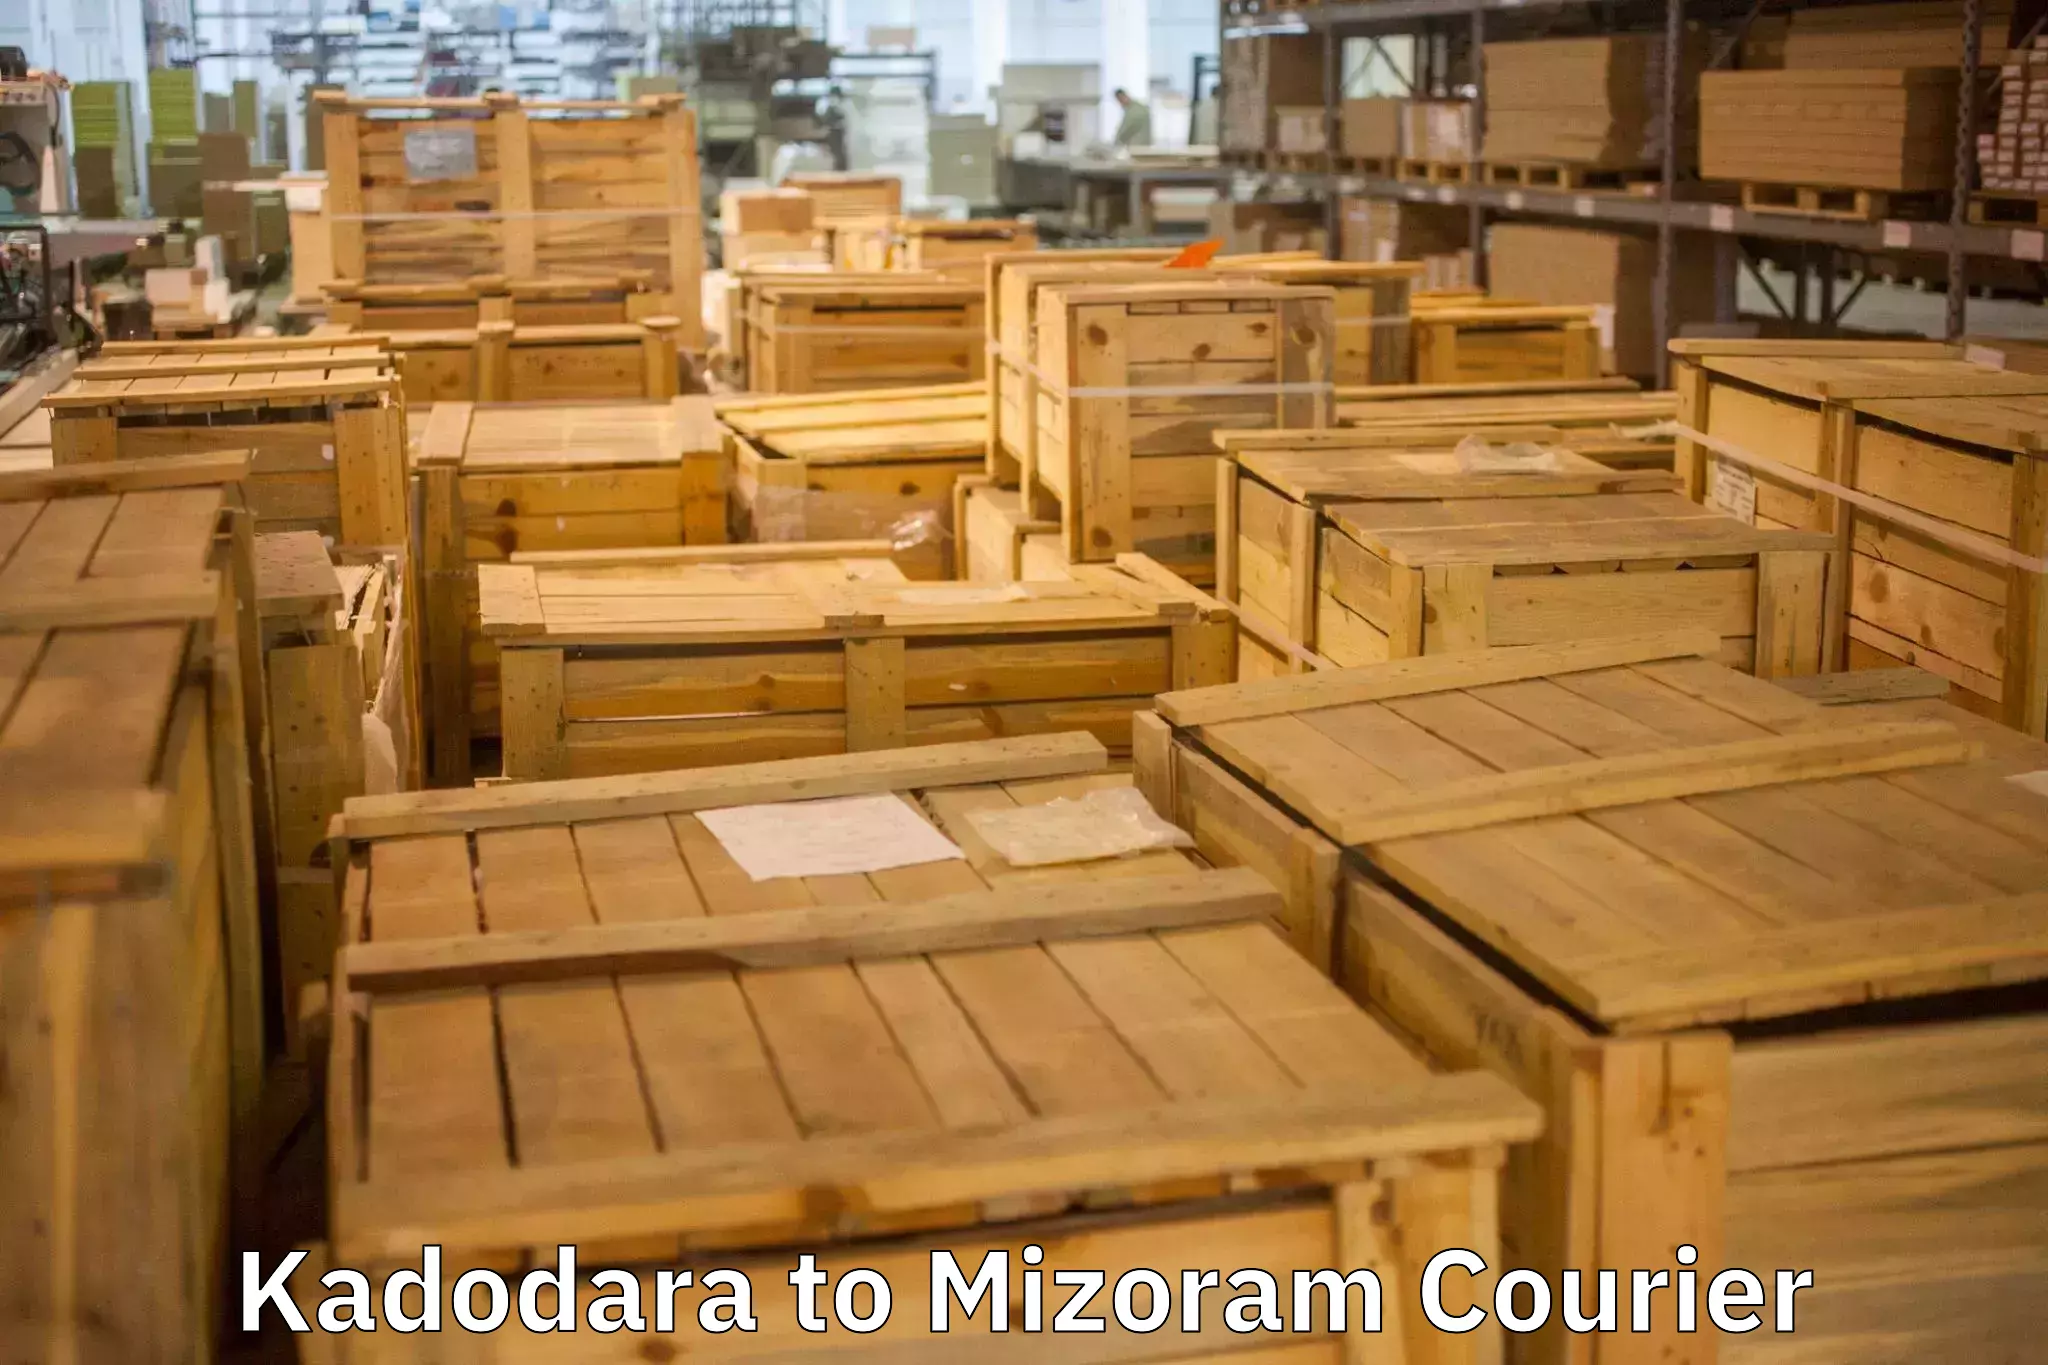 Expert goods movers Kadodara to Saitual